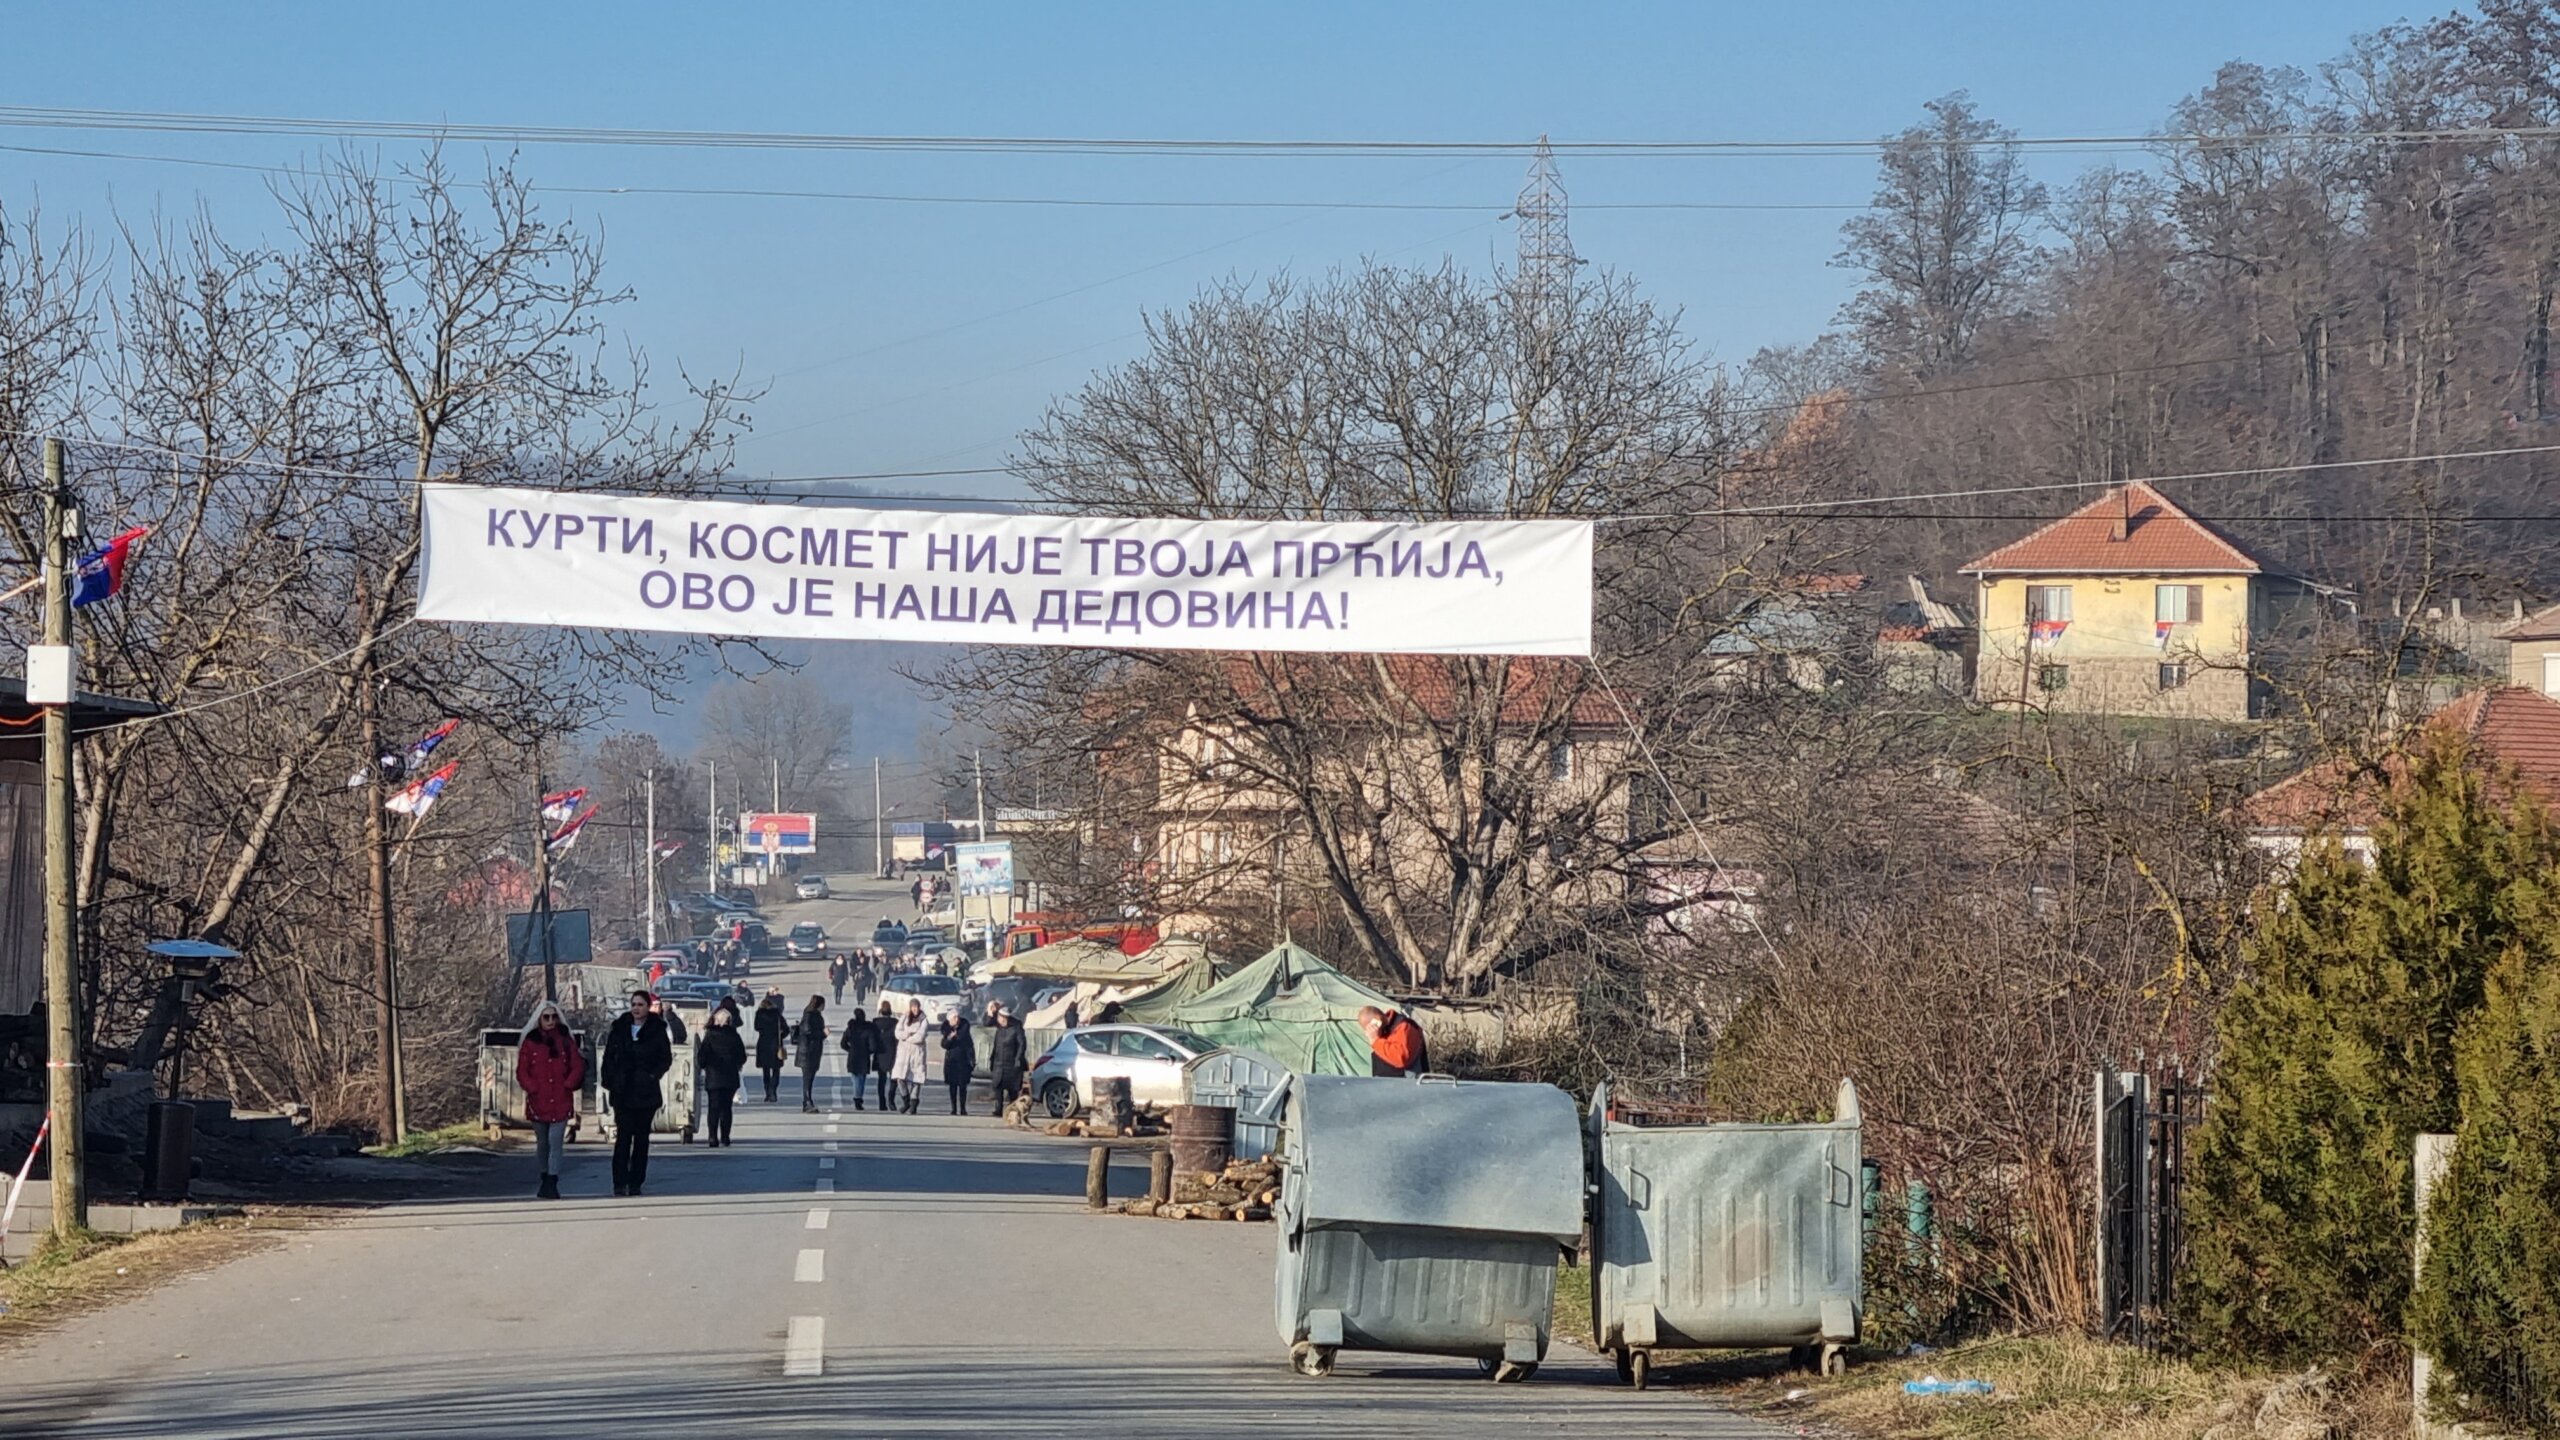 Ko su ljudi koji sede na barikadama: Reporter Danasa obišao sever Kosova (FOTO) 3